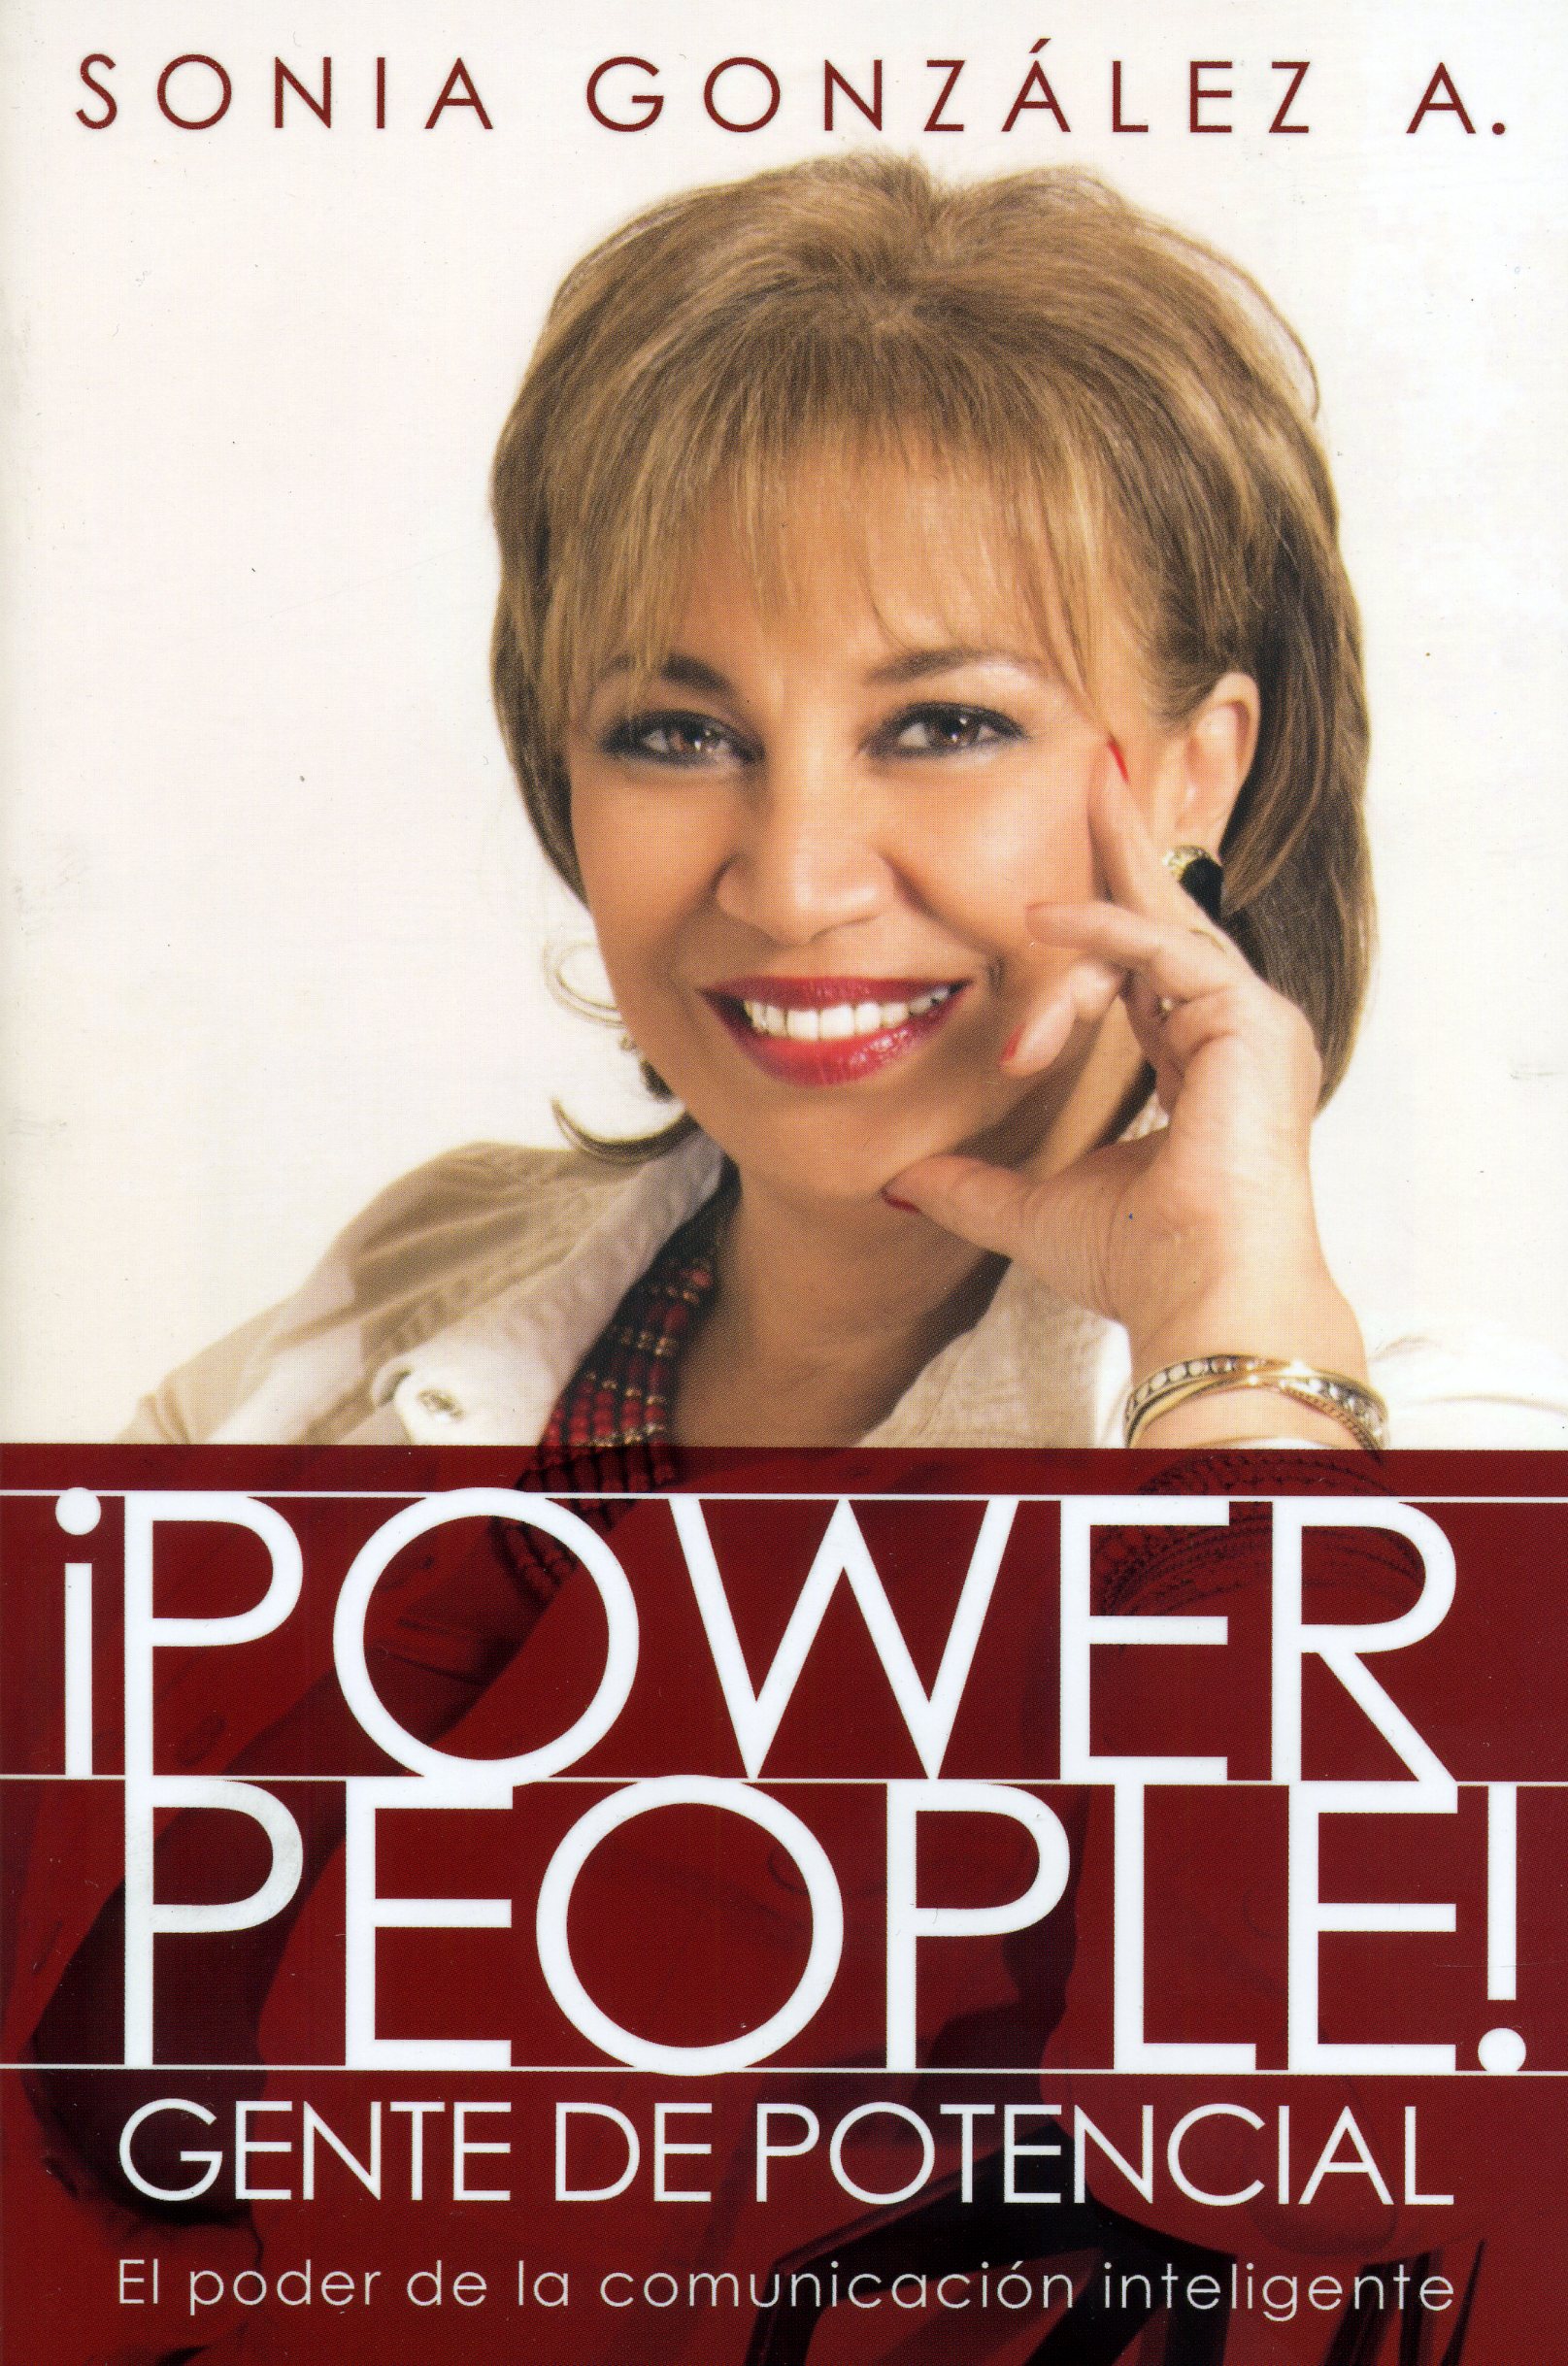 ¡Power people! Gente de potencial